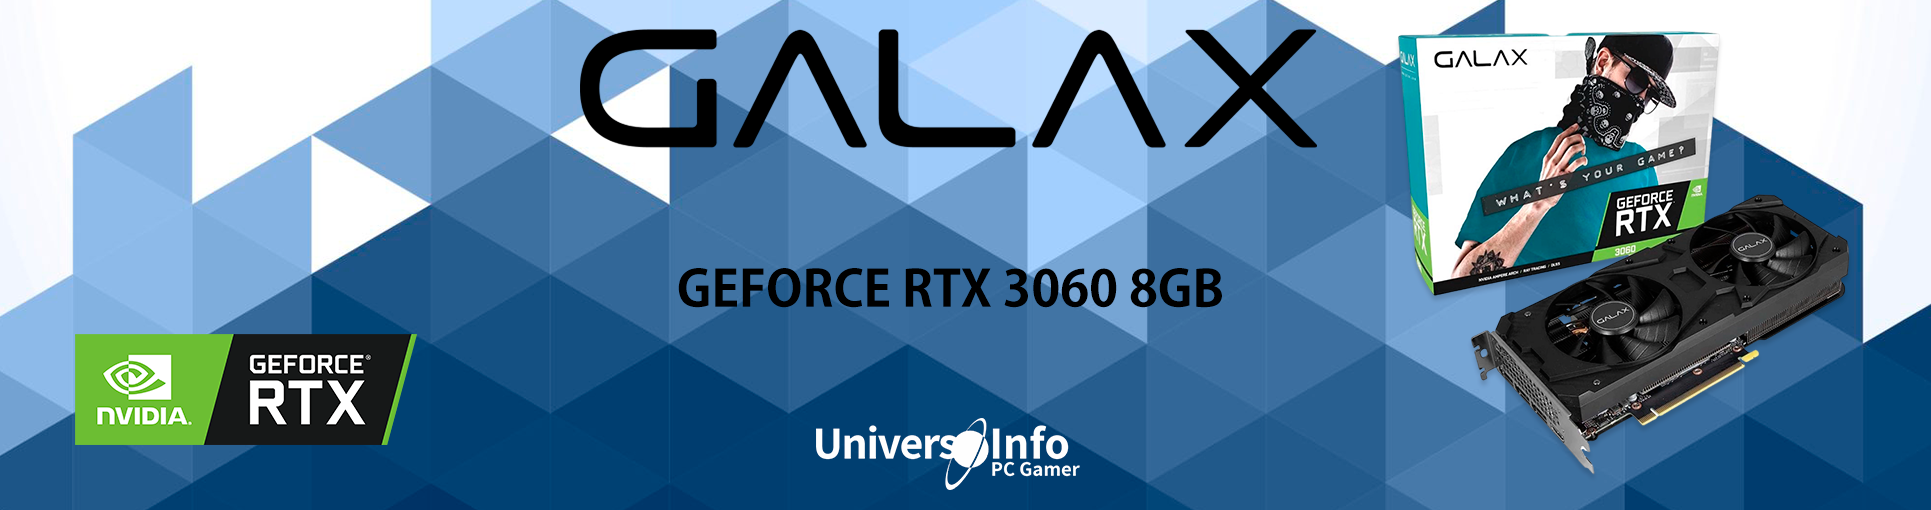 Placa de Vídeo Galax NVIDIA GeForce RTX 3060 OC, 8GB GDDR6, LHR, 1-Click,